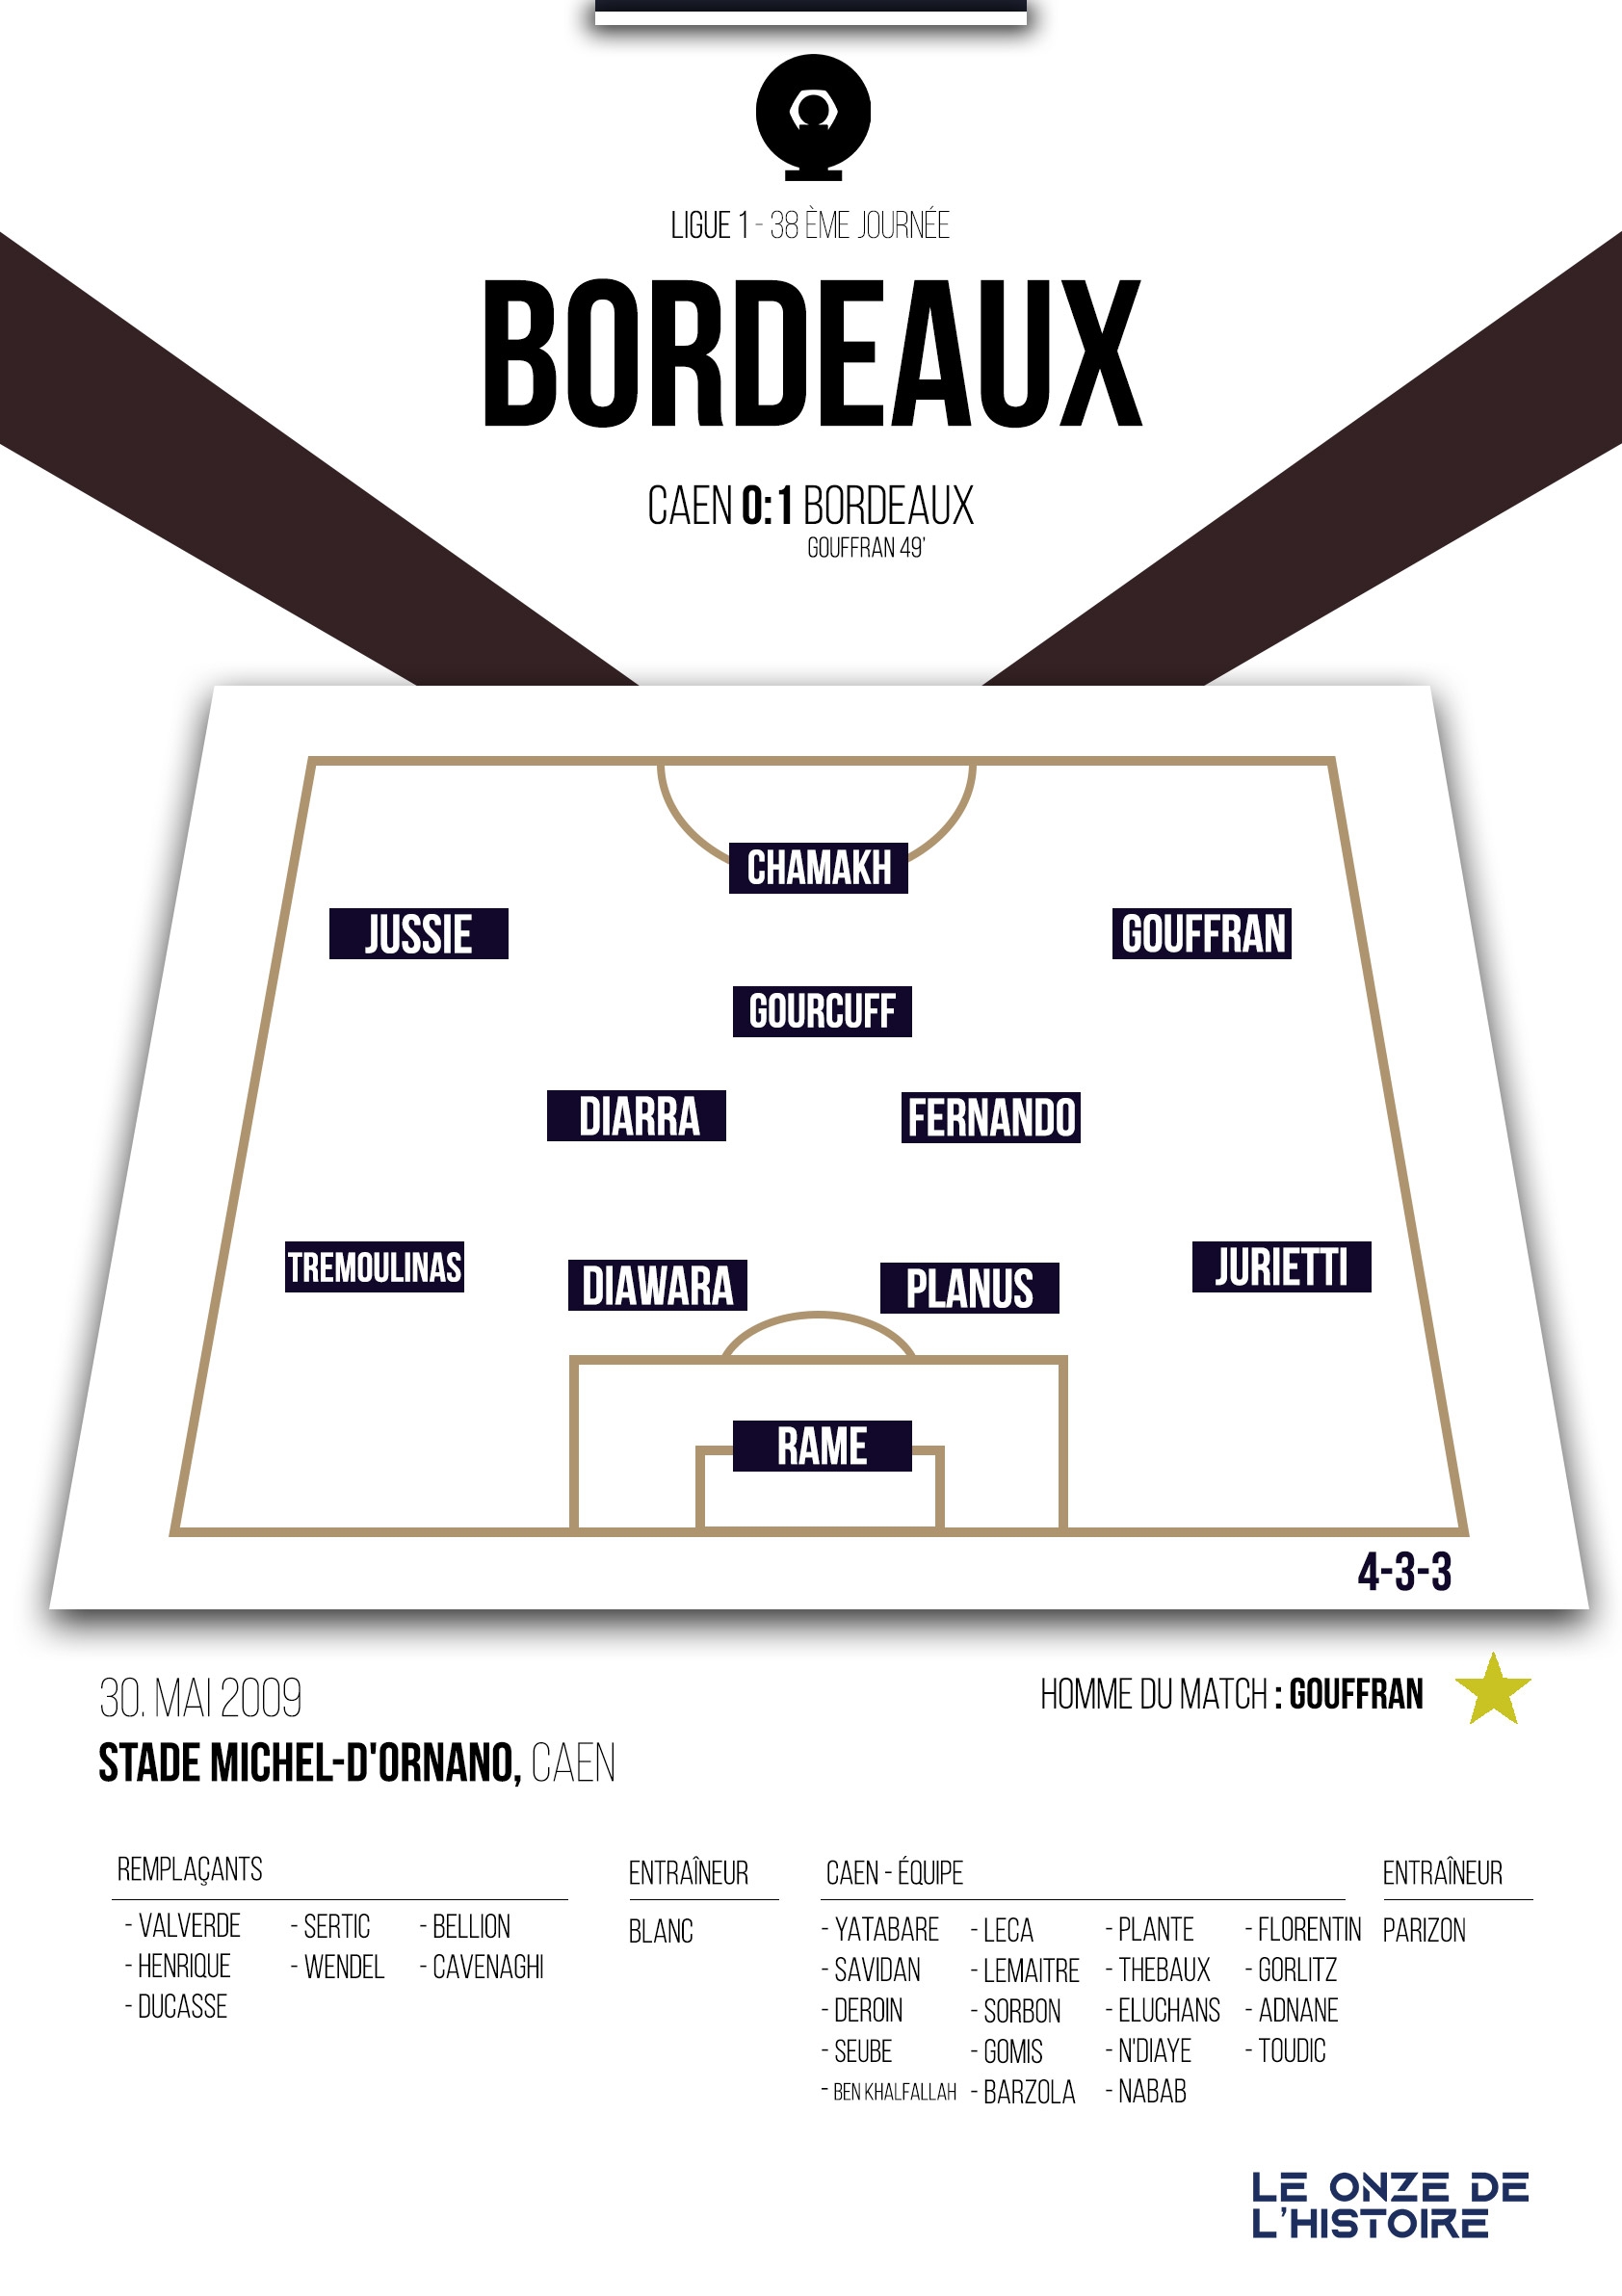 Poster Girondins de Bordeaux |Champion de France 2009 – Ligue 1